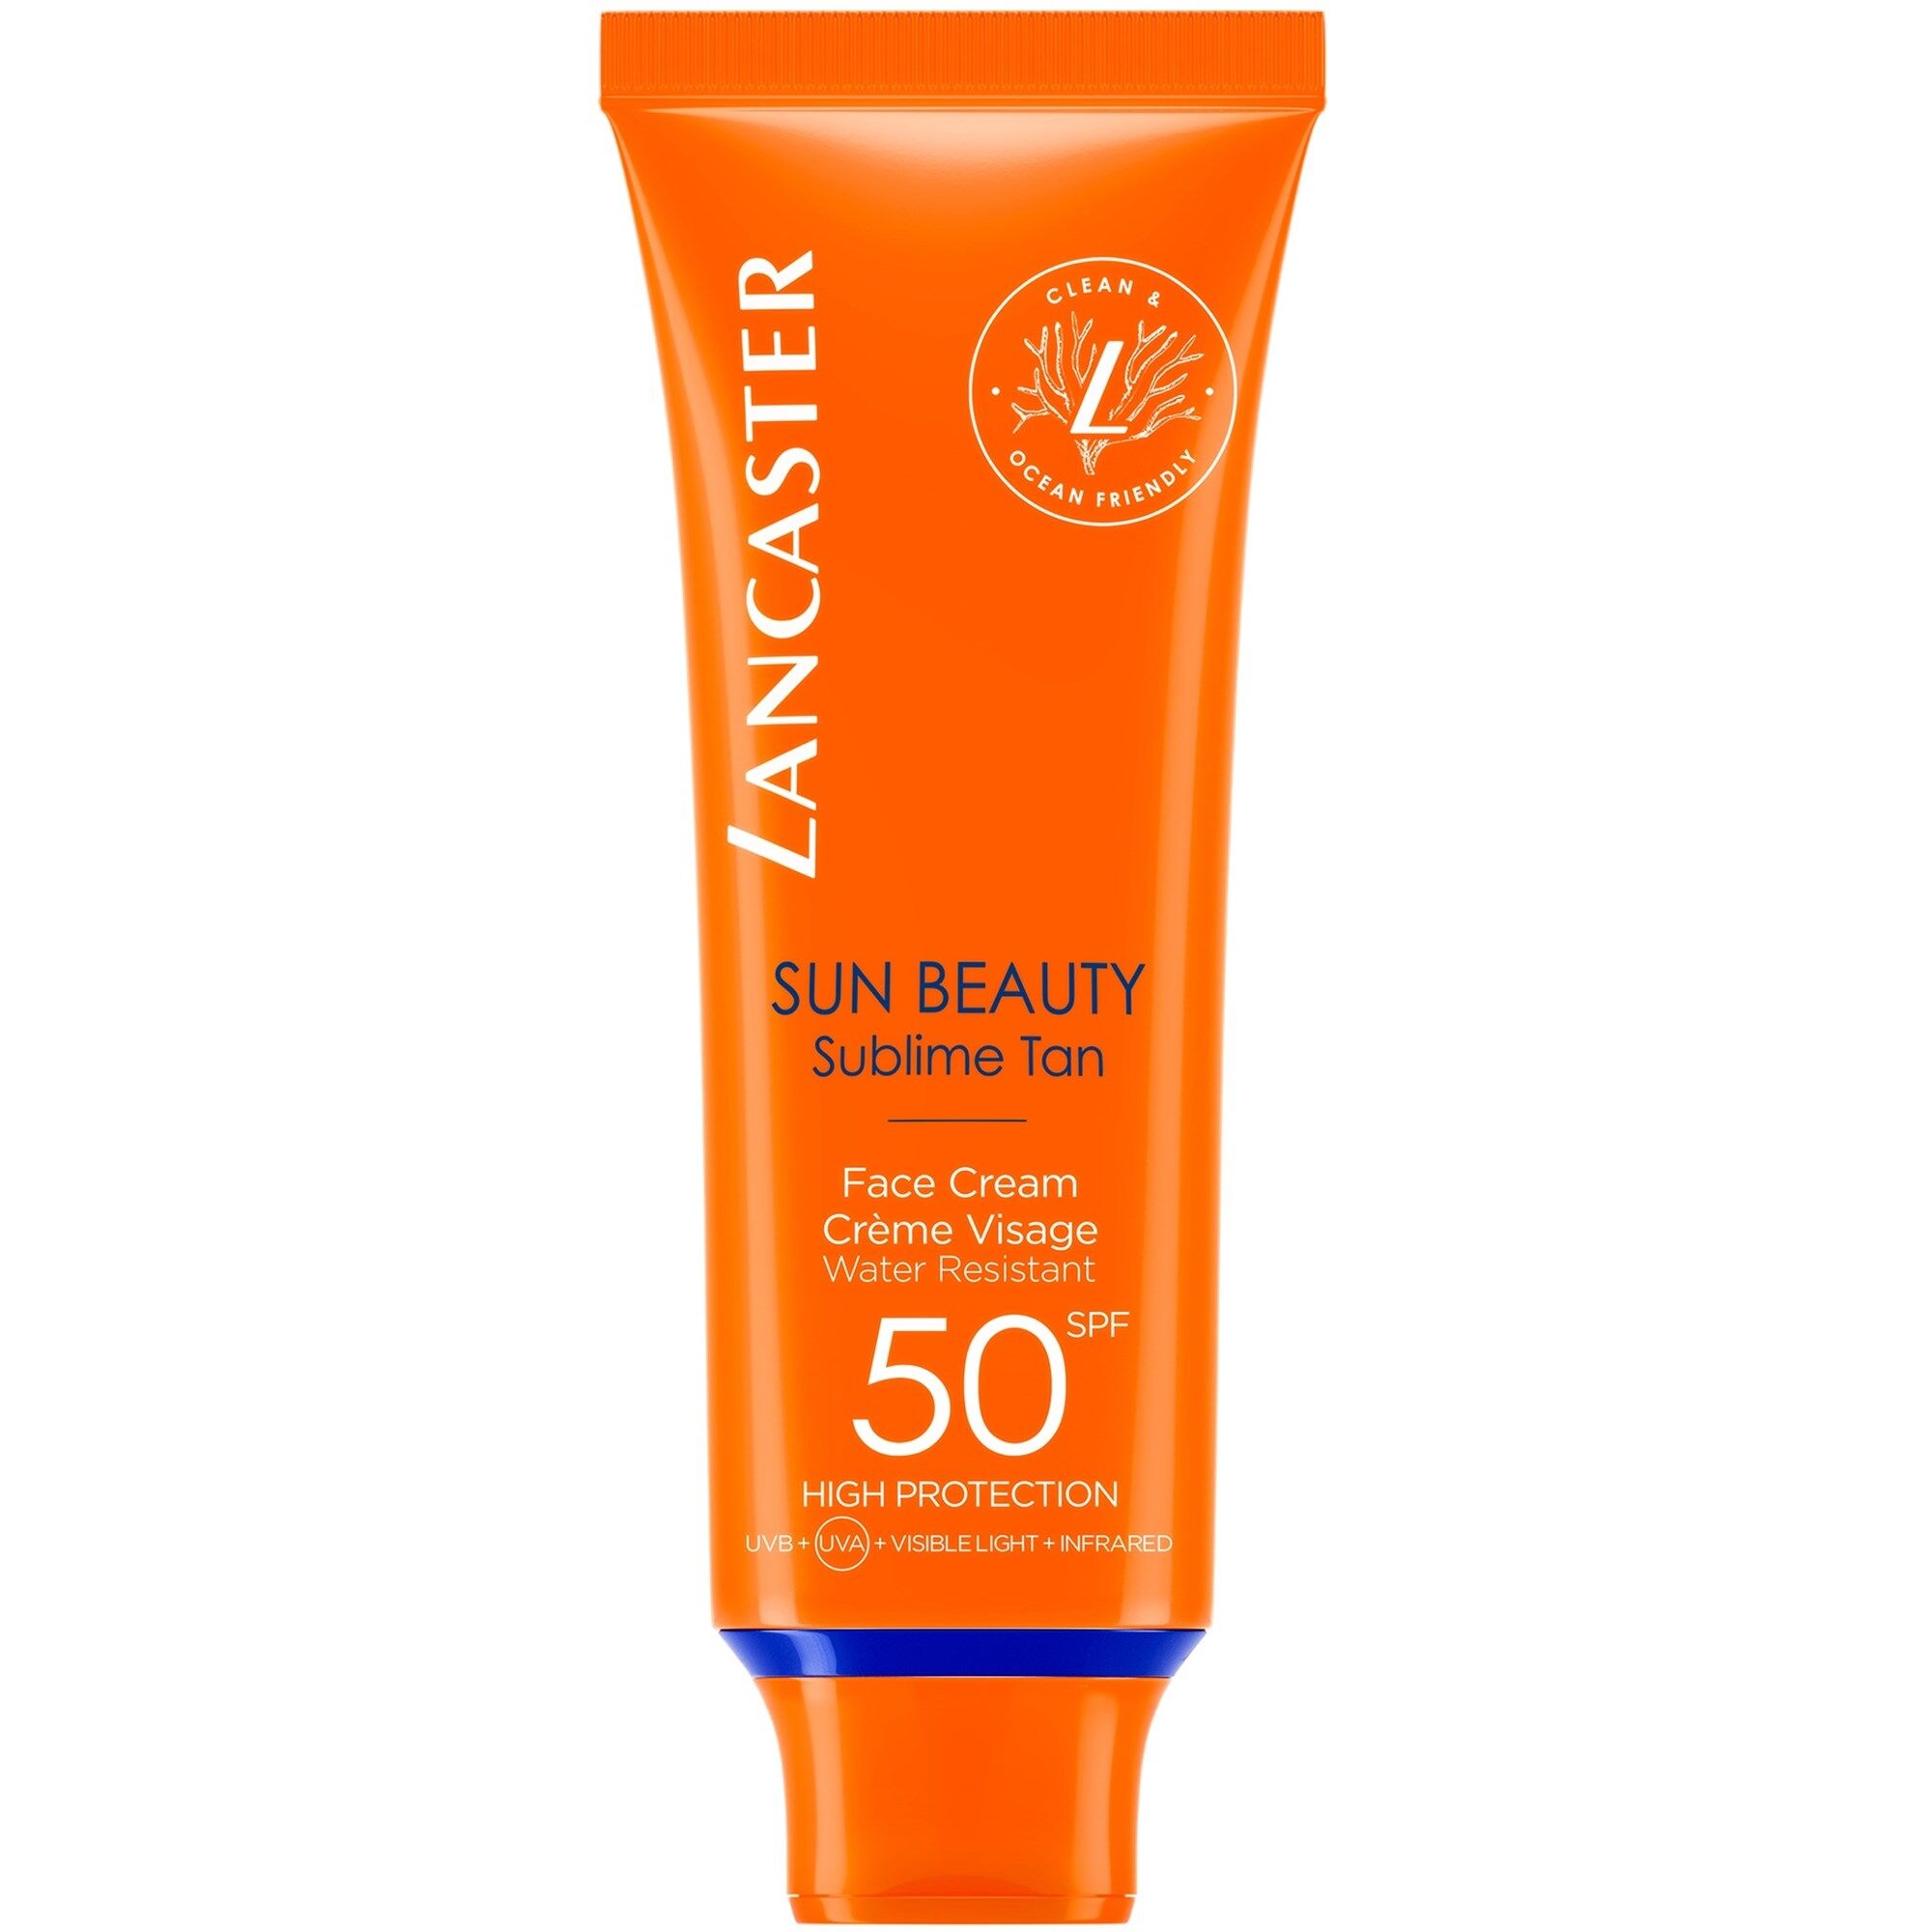 Lancaster Sun Beauty Crema facial bronceado sublime SPF50 50mL SPF50